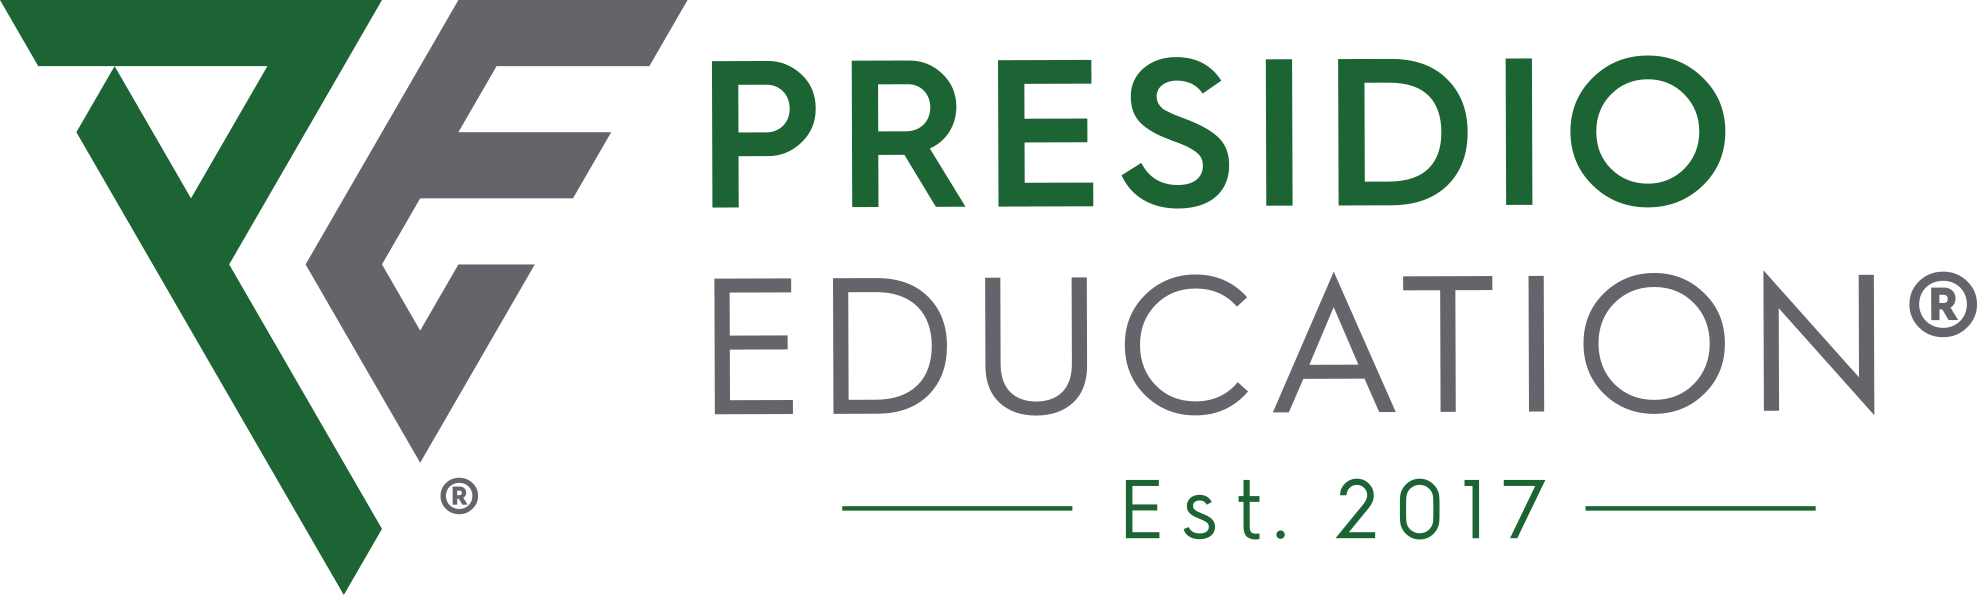 Presidio Education®